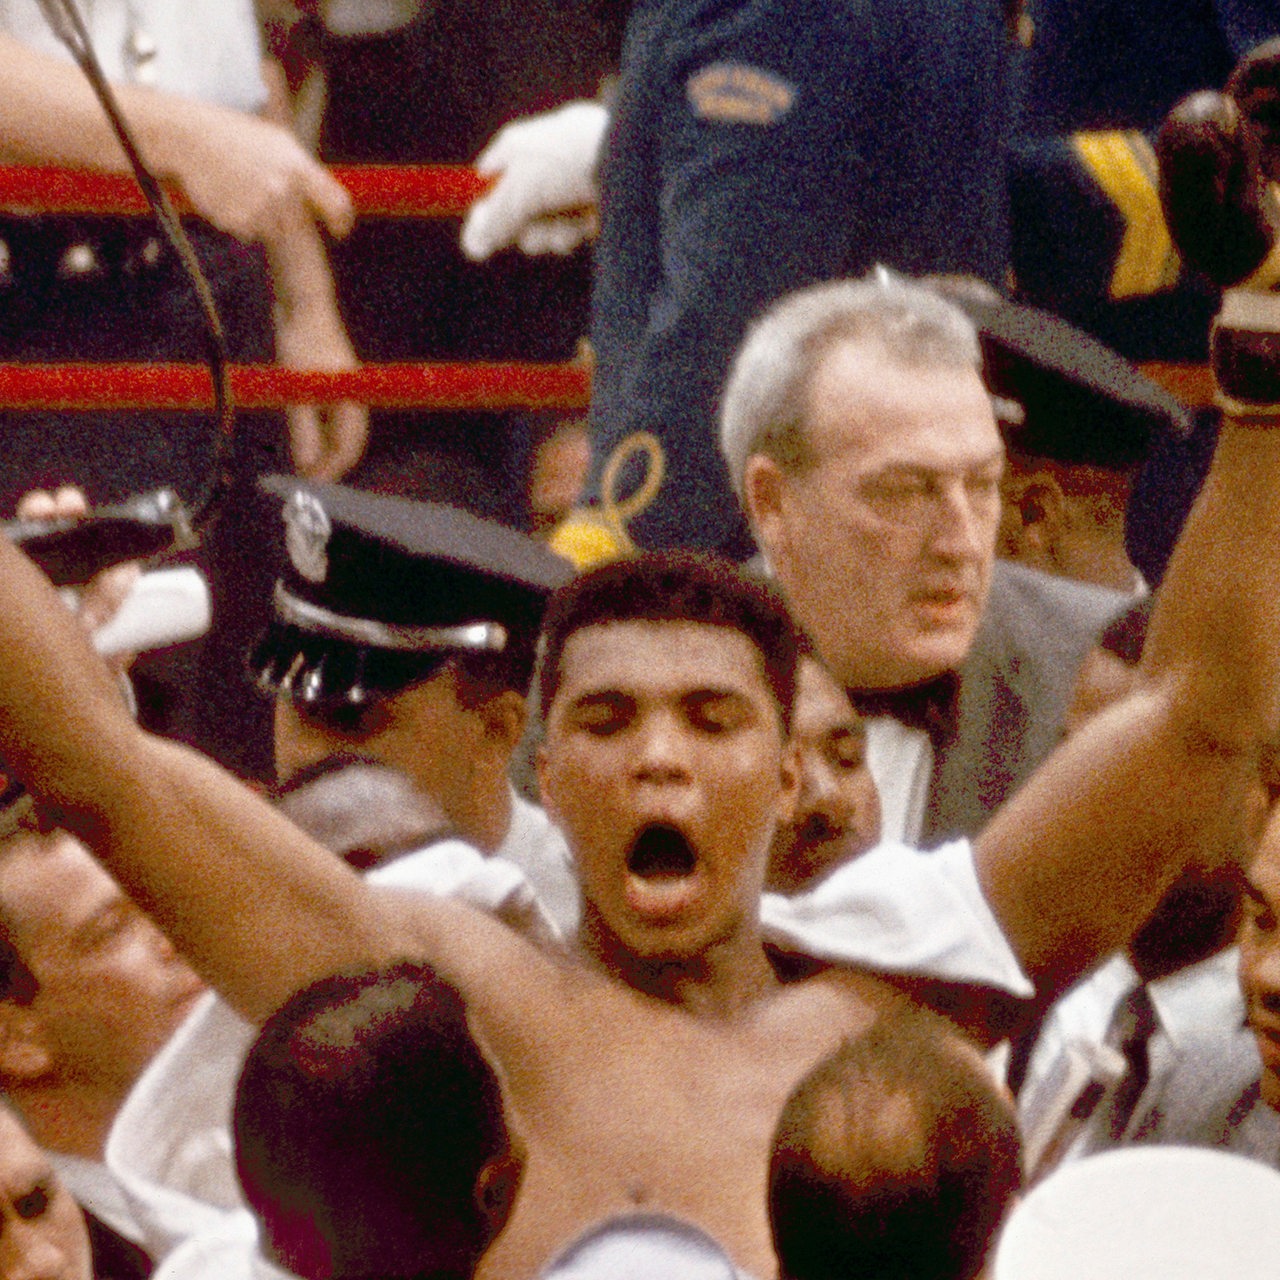 Umringt von Menschen zeigt sich 1964 Cassius Clay in Siegerpose als jüngster Boxweltmeister im Schwergewicht.